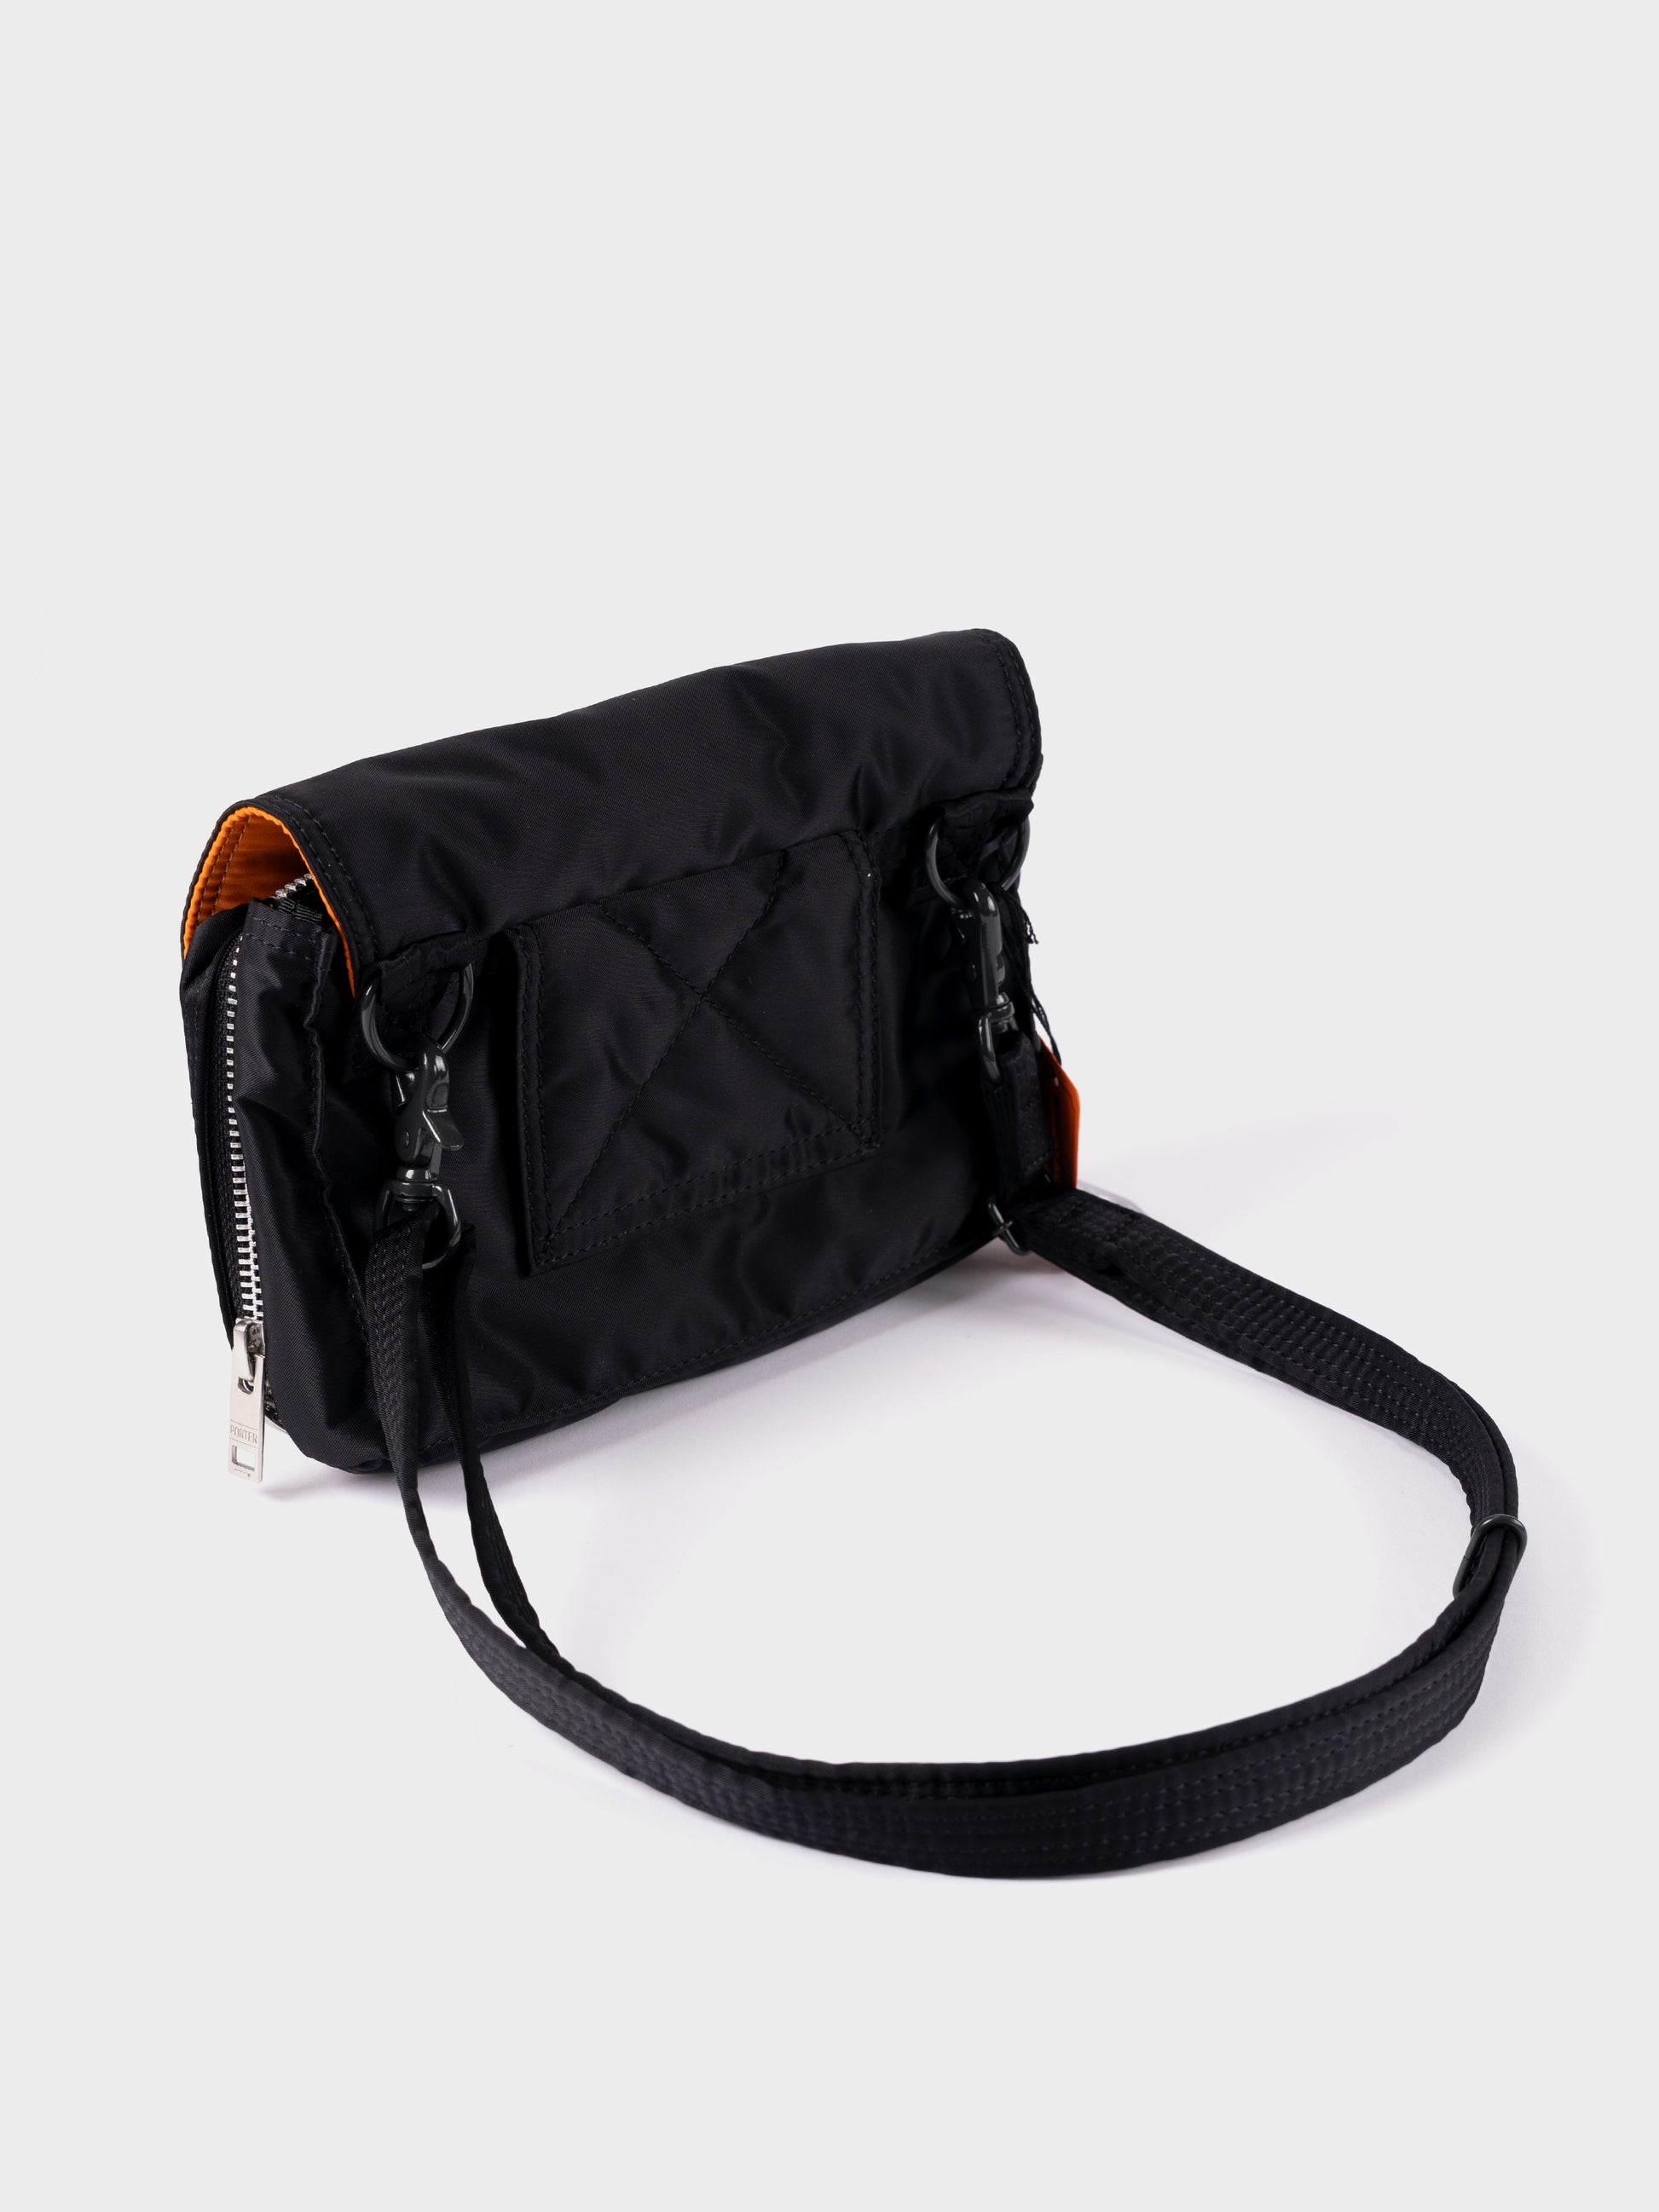 Porter-Yoshida & Co Tanker Pop Front Shoulder Bag - Black